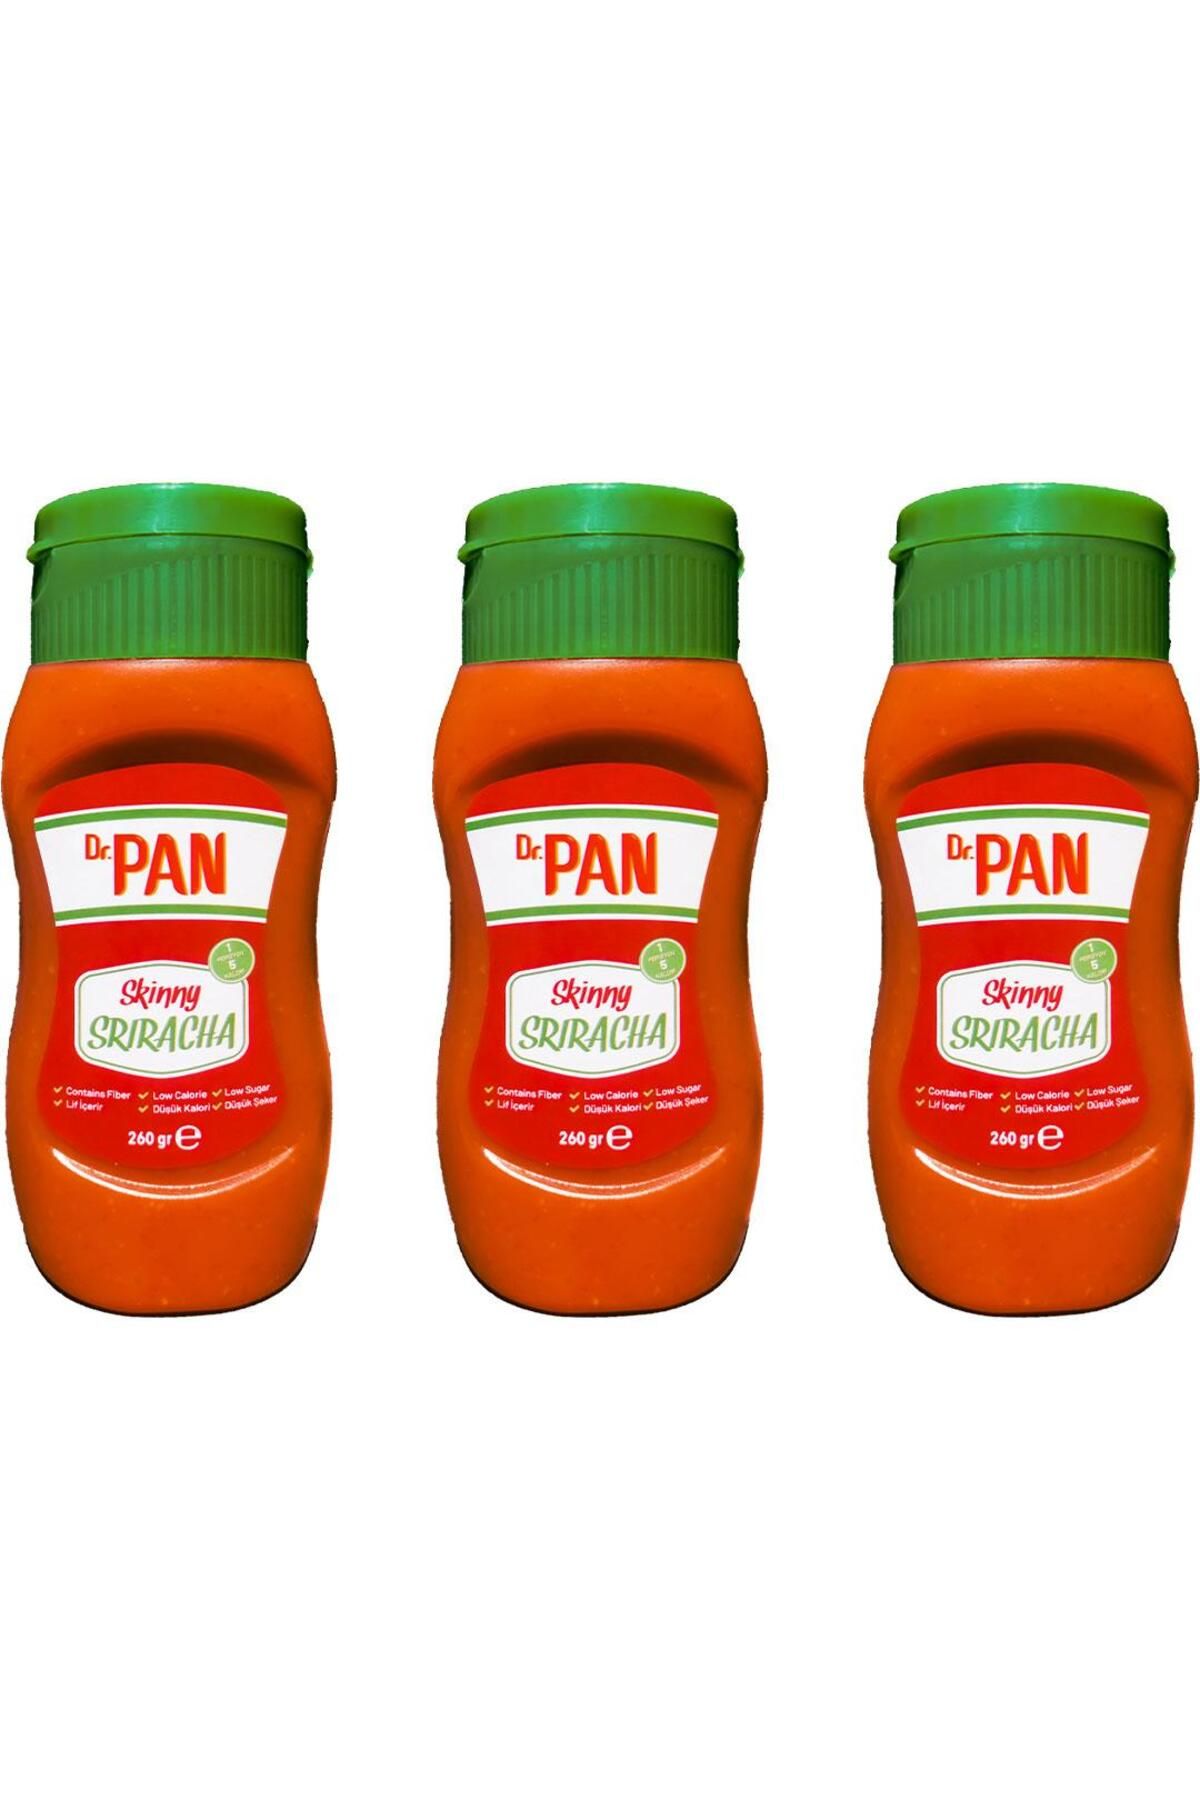 Dr Pan Dr. Pan Skinny Sriracha Şeker İlavesiz Düşük Kalorili Sarımsaklı Acı Biber Sosu 3 x 260 Gr